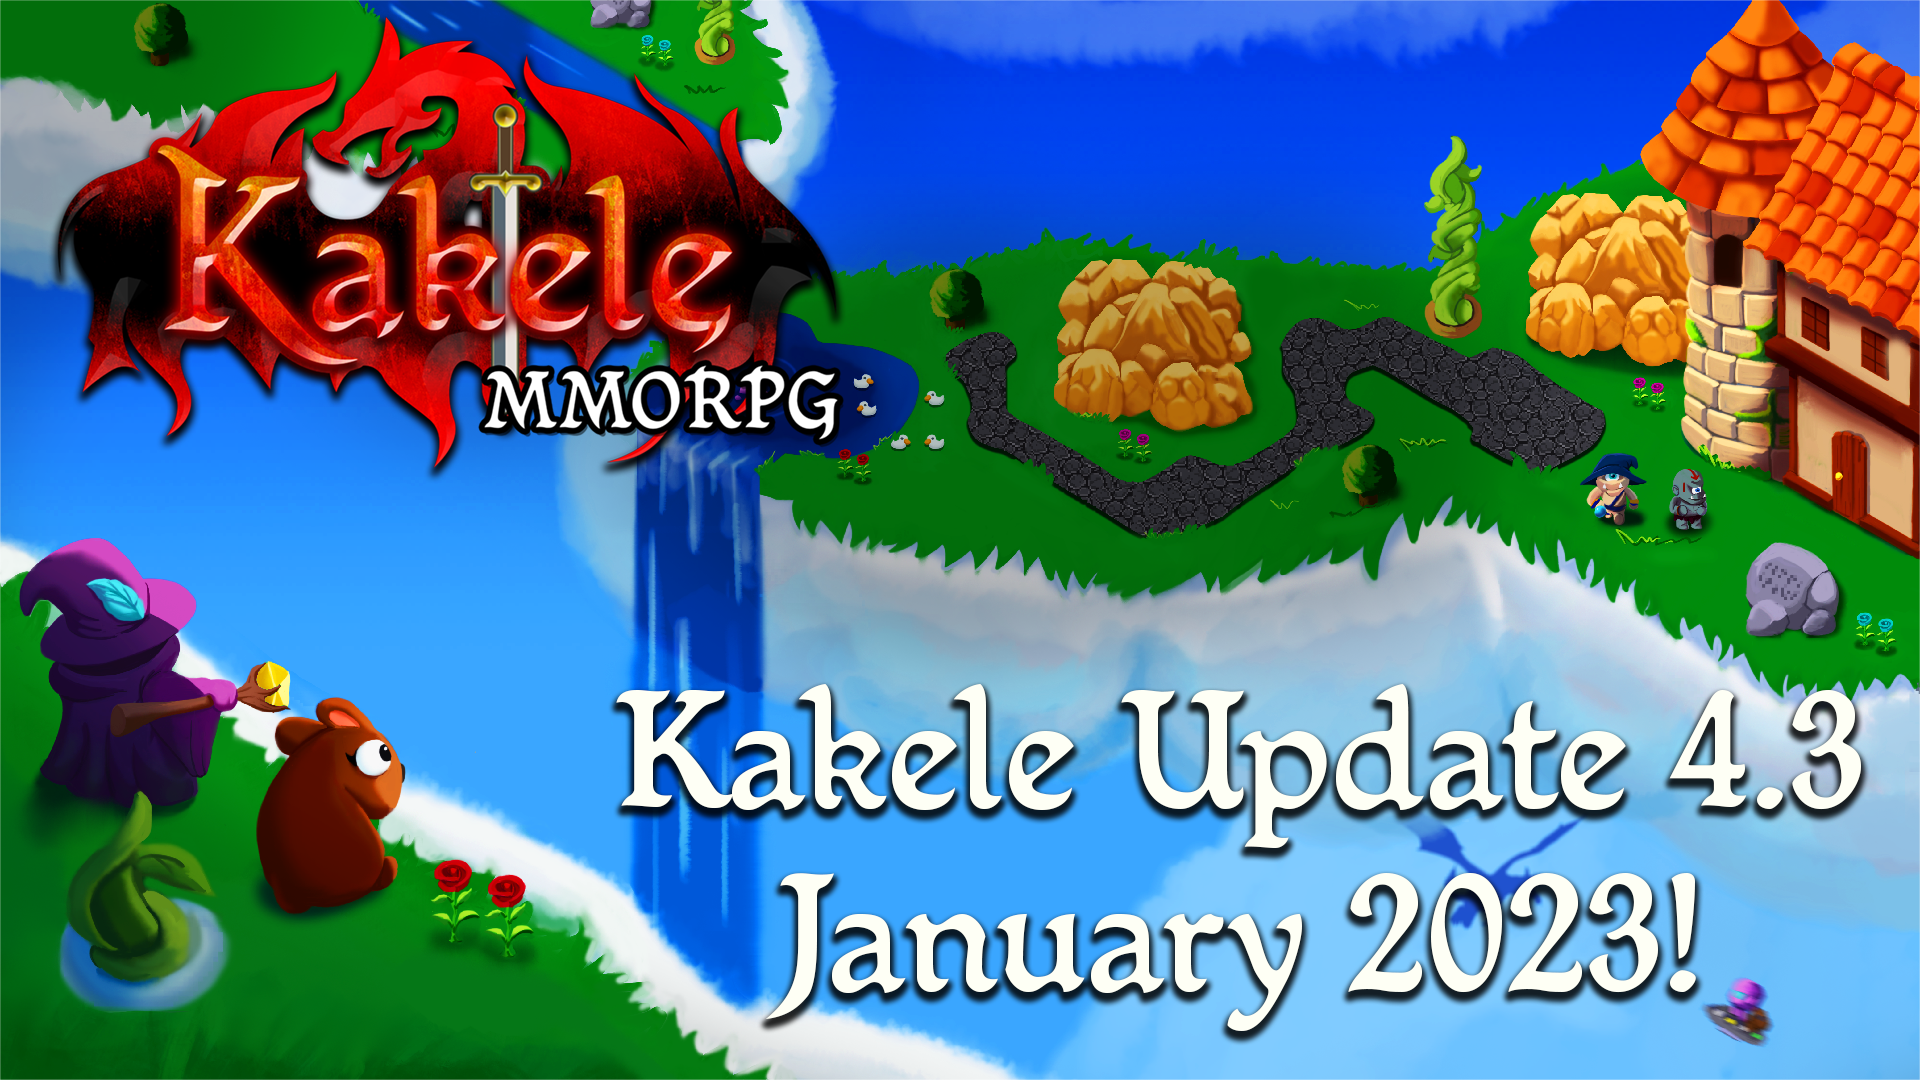 instal the new for windows Kakele Online - MMORPG